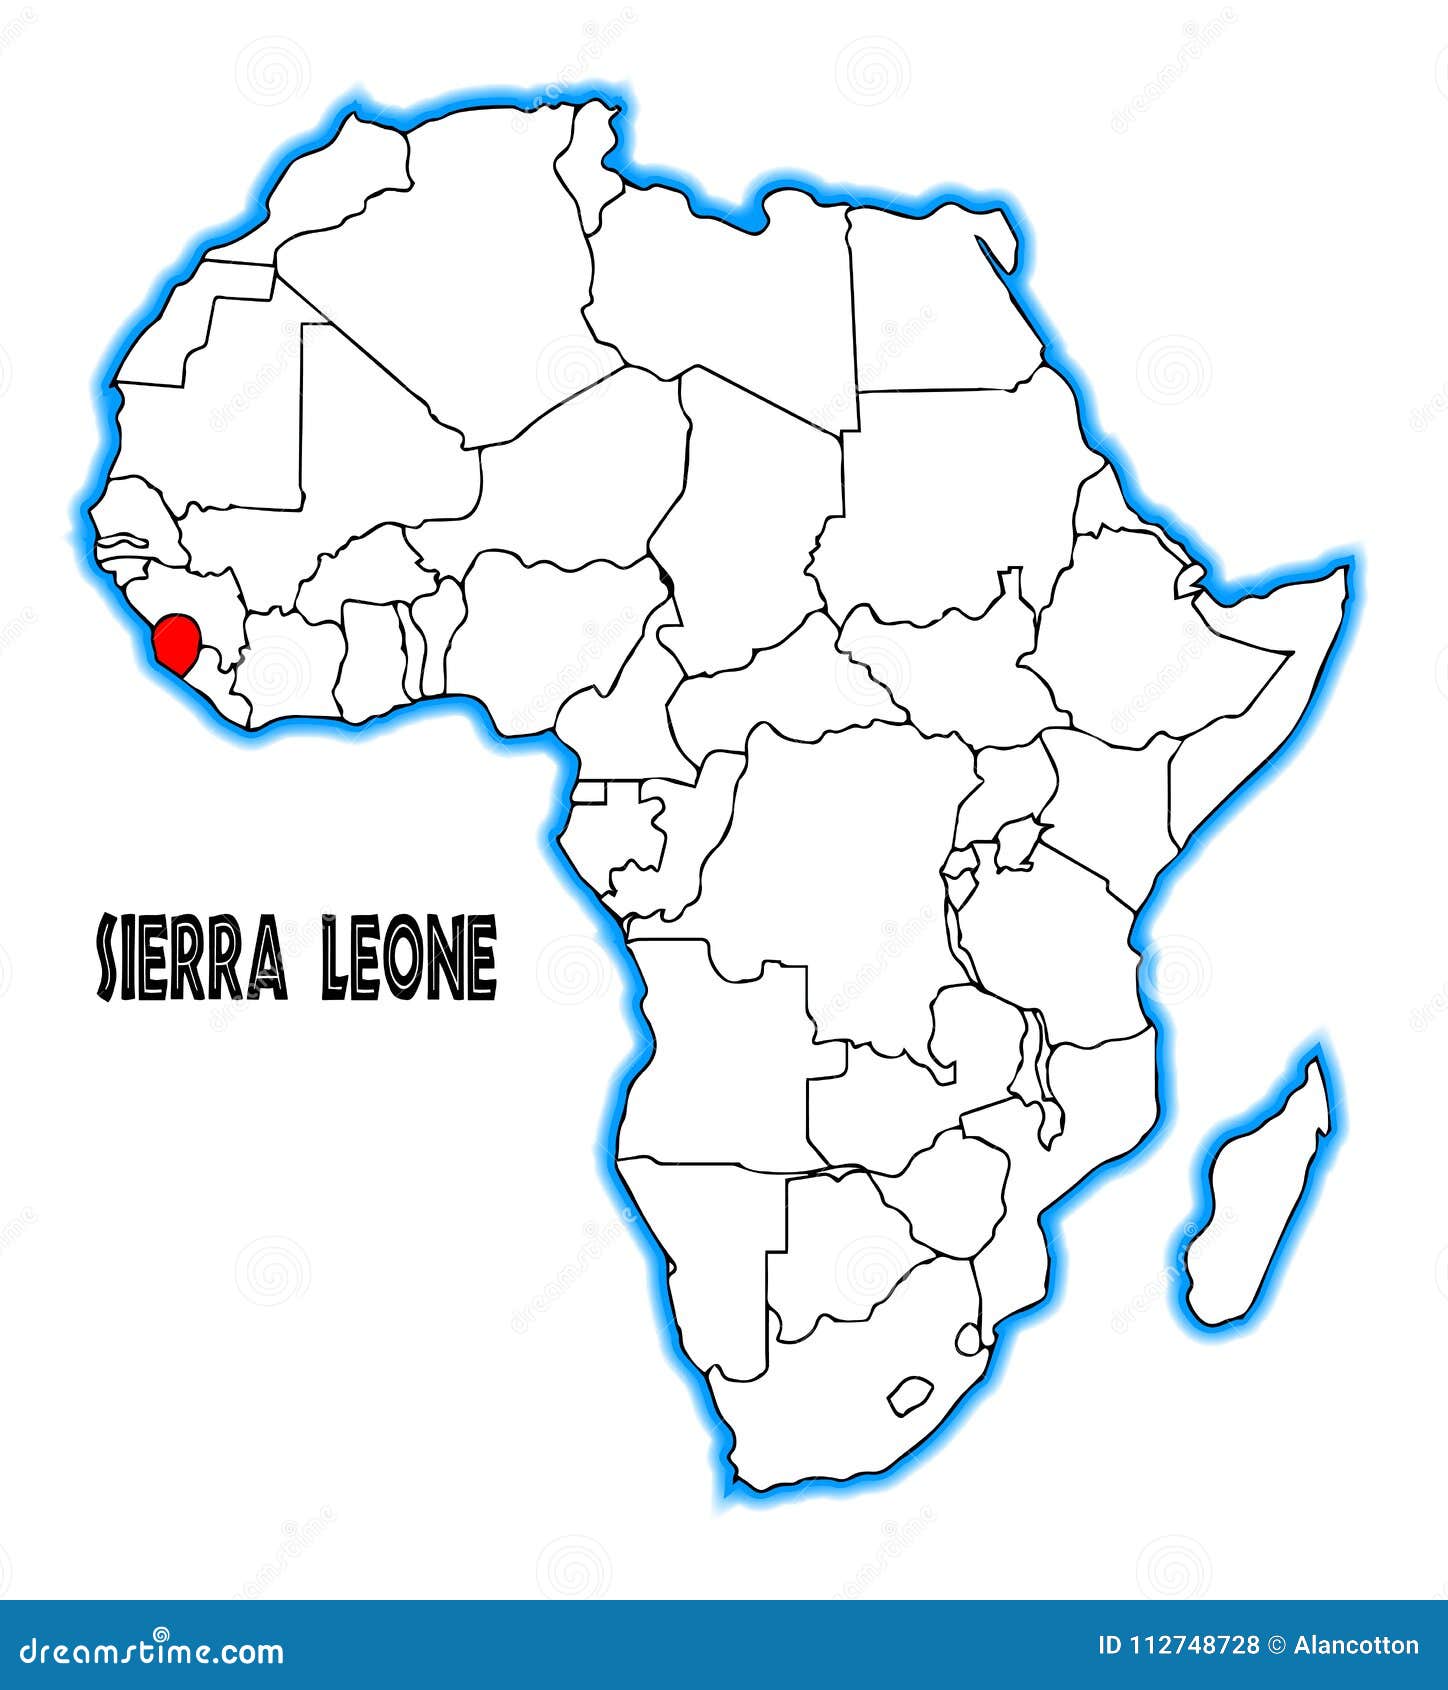 Sierra Leone Maps Facts Sierra Leone Sierra Freetown